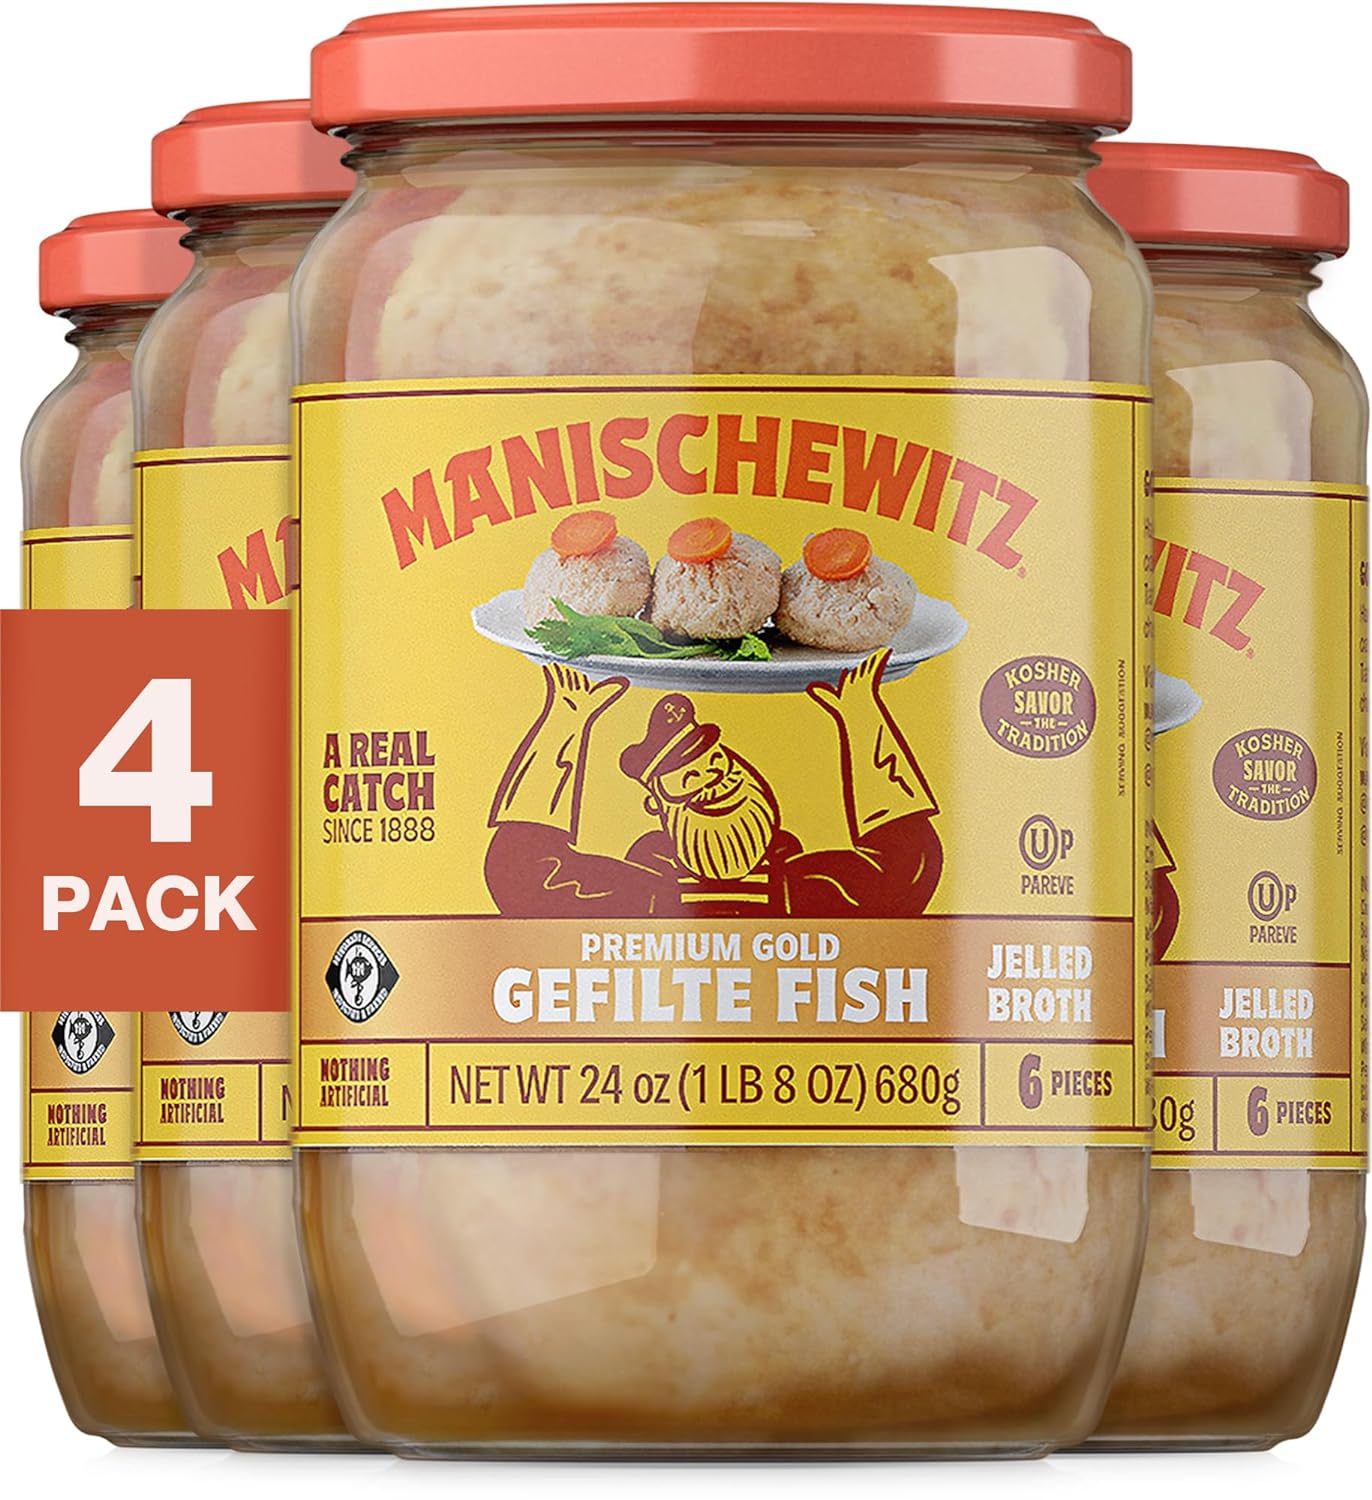 Manischewitz Premium Gold Gefilte Fish with Carrots, 24oz (4 Pack) | Kosher for Passover | No Added MSG | Protein Rich